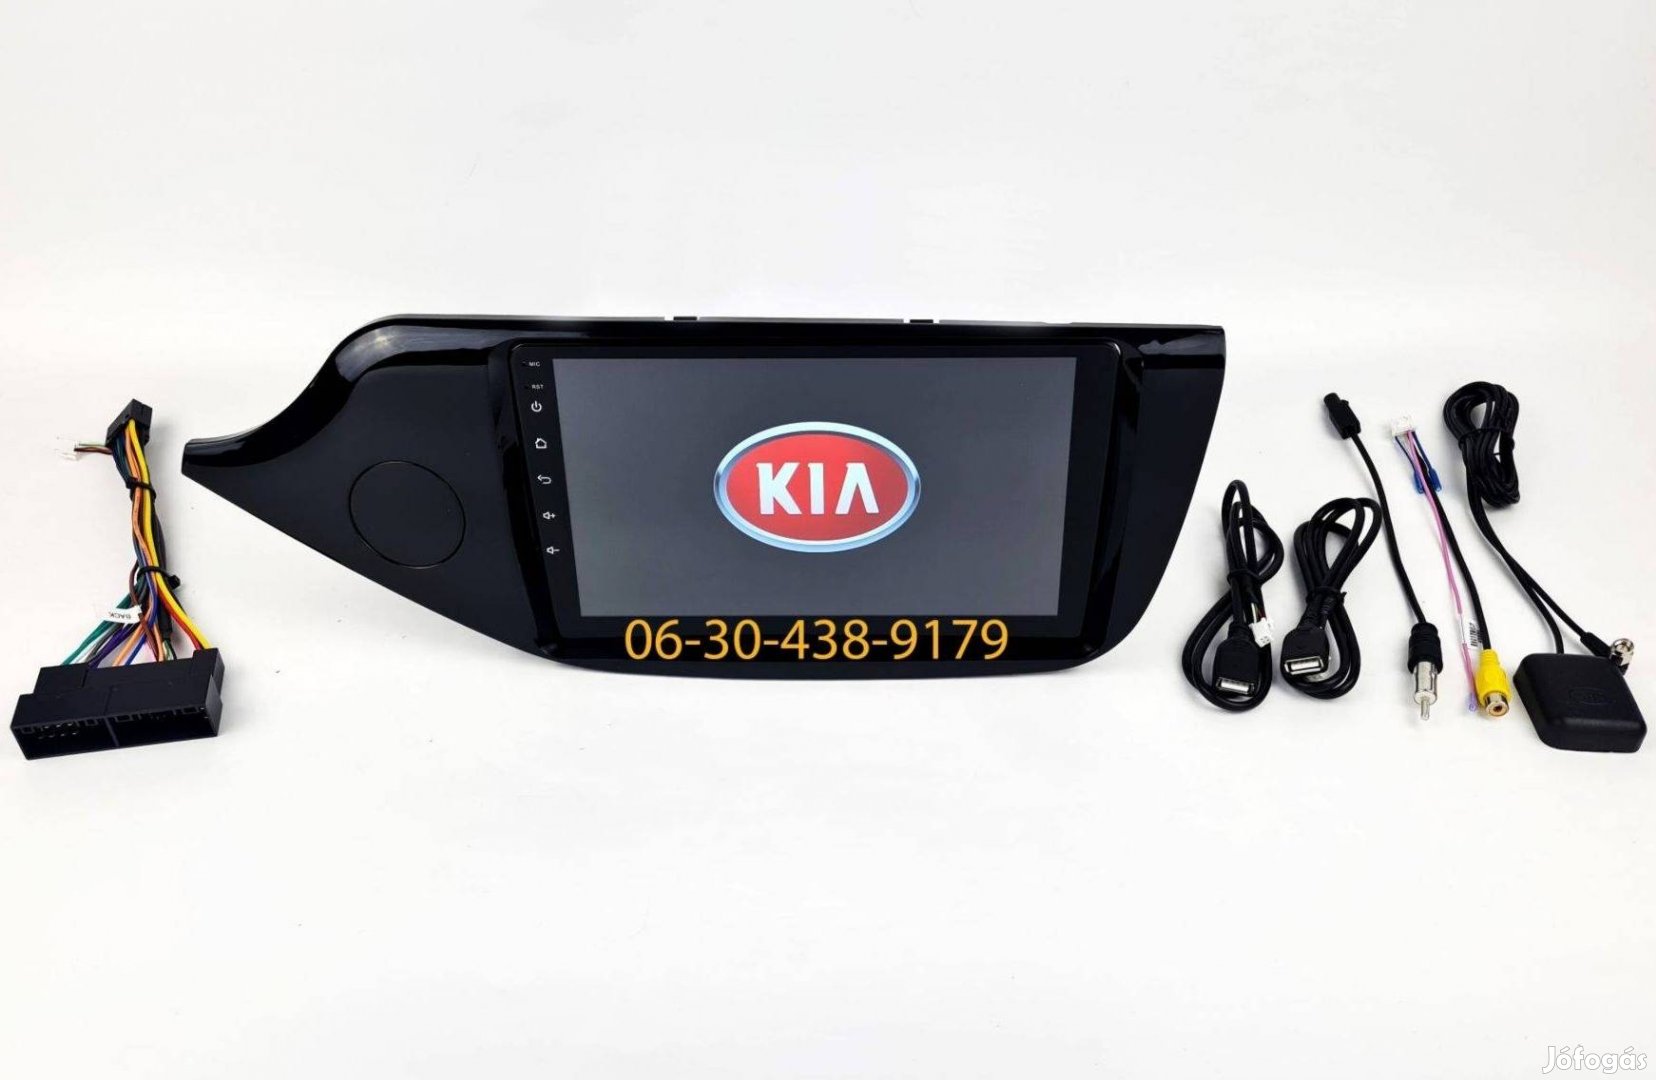 KIA Ceed Android autórádió fejegység gyári helyre 1-4GB Carplay